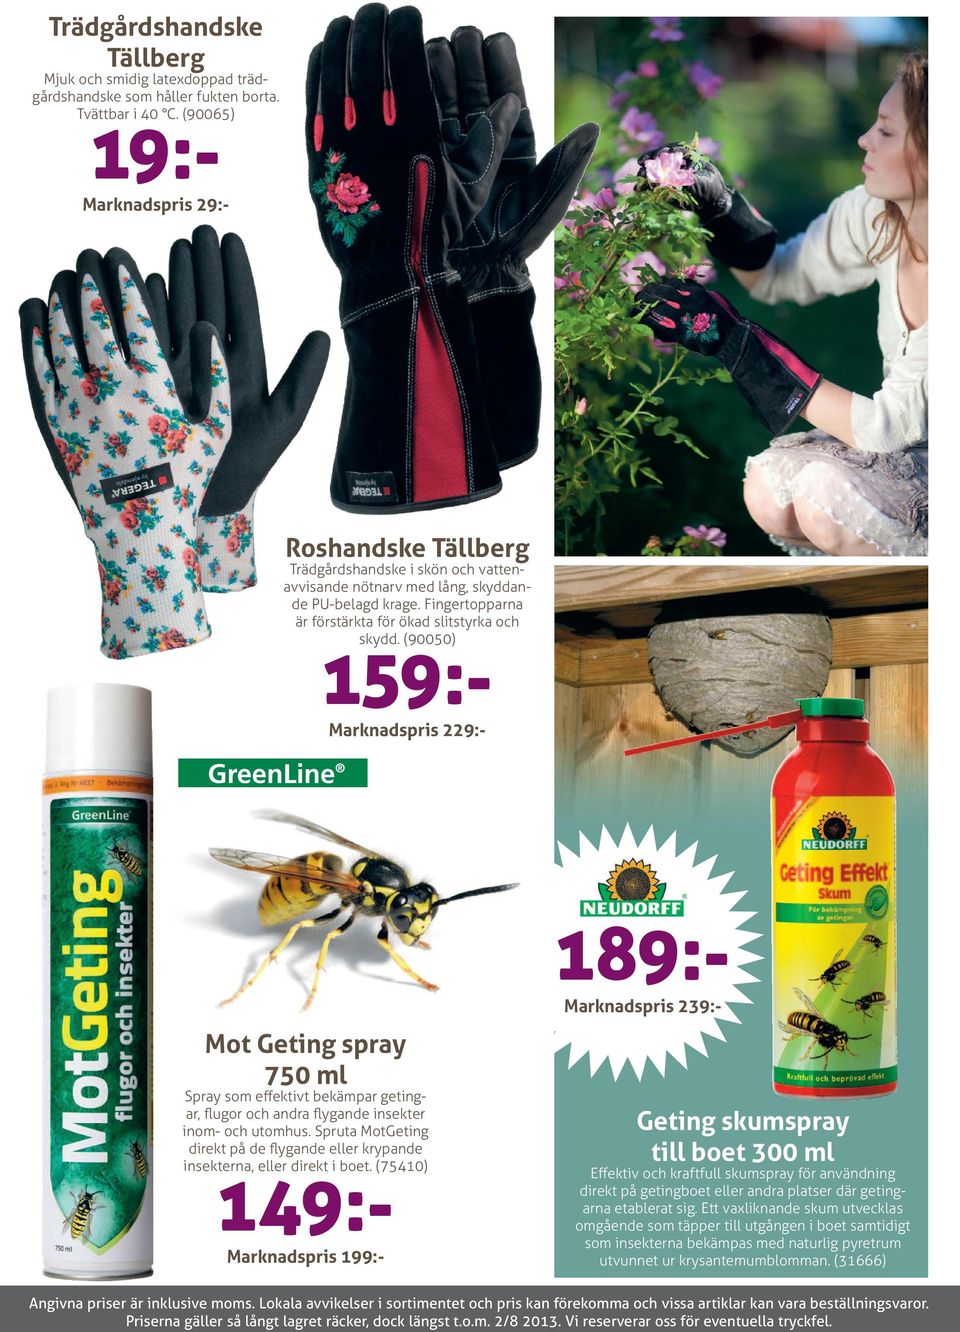 (90050) 159:- Marknadspris 229:- 189:- Marknadspris 239:- Mot Geting spray 750 ml Spray som effektivt bekämpar getingar, flugor och andra flygande insekter inom- och utomhus.